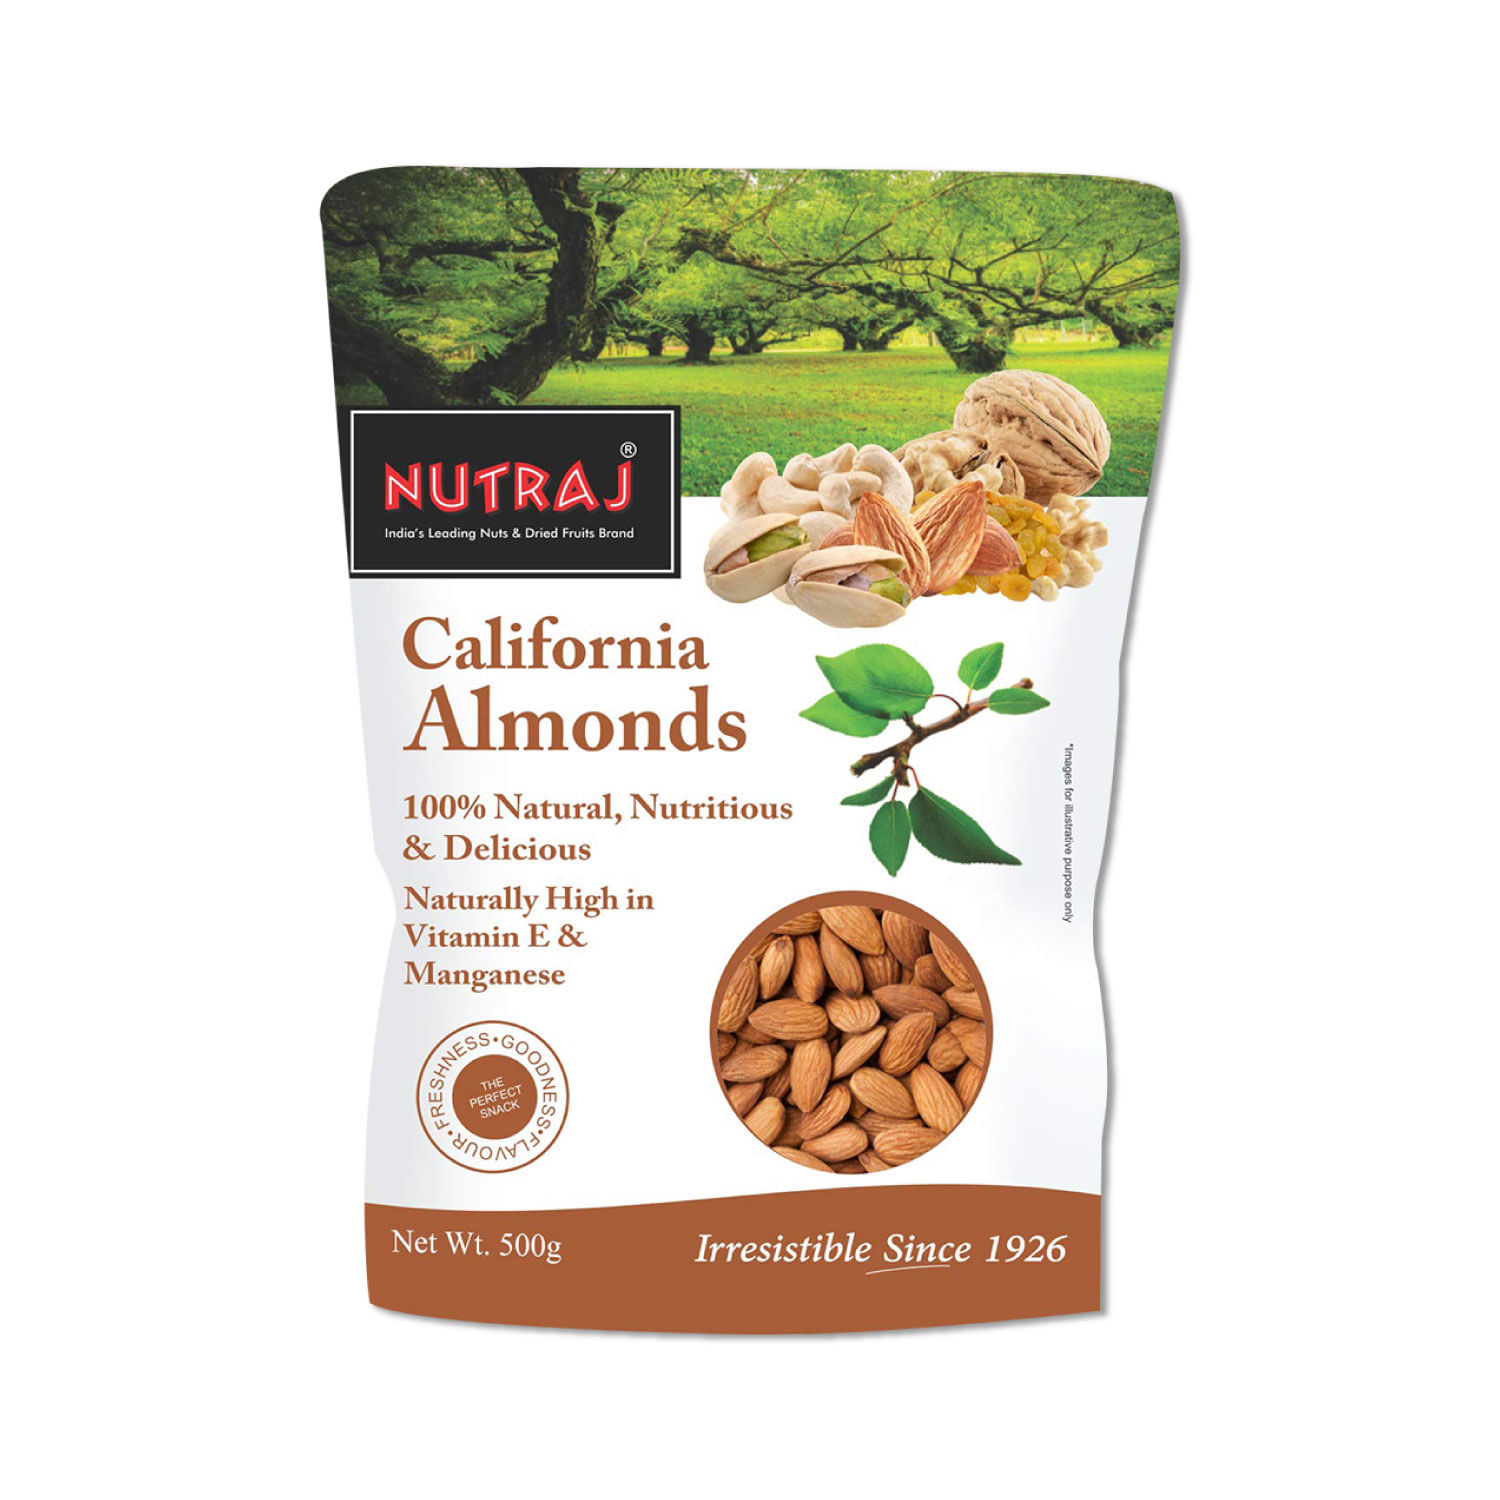 Nutraj Kalmi Dates (Safawi) (500g) and Nutraj California Almonds (500g)